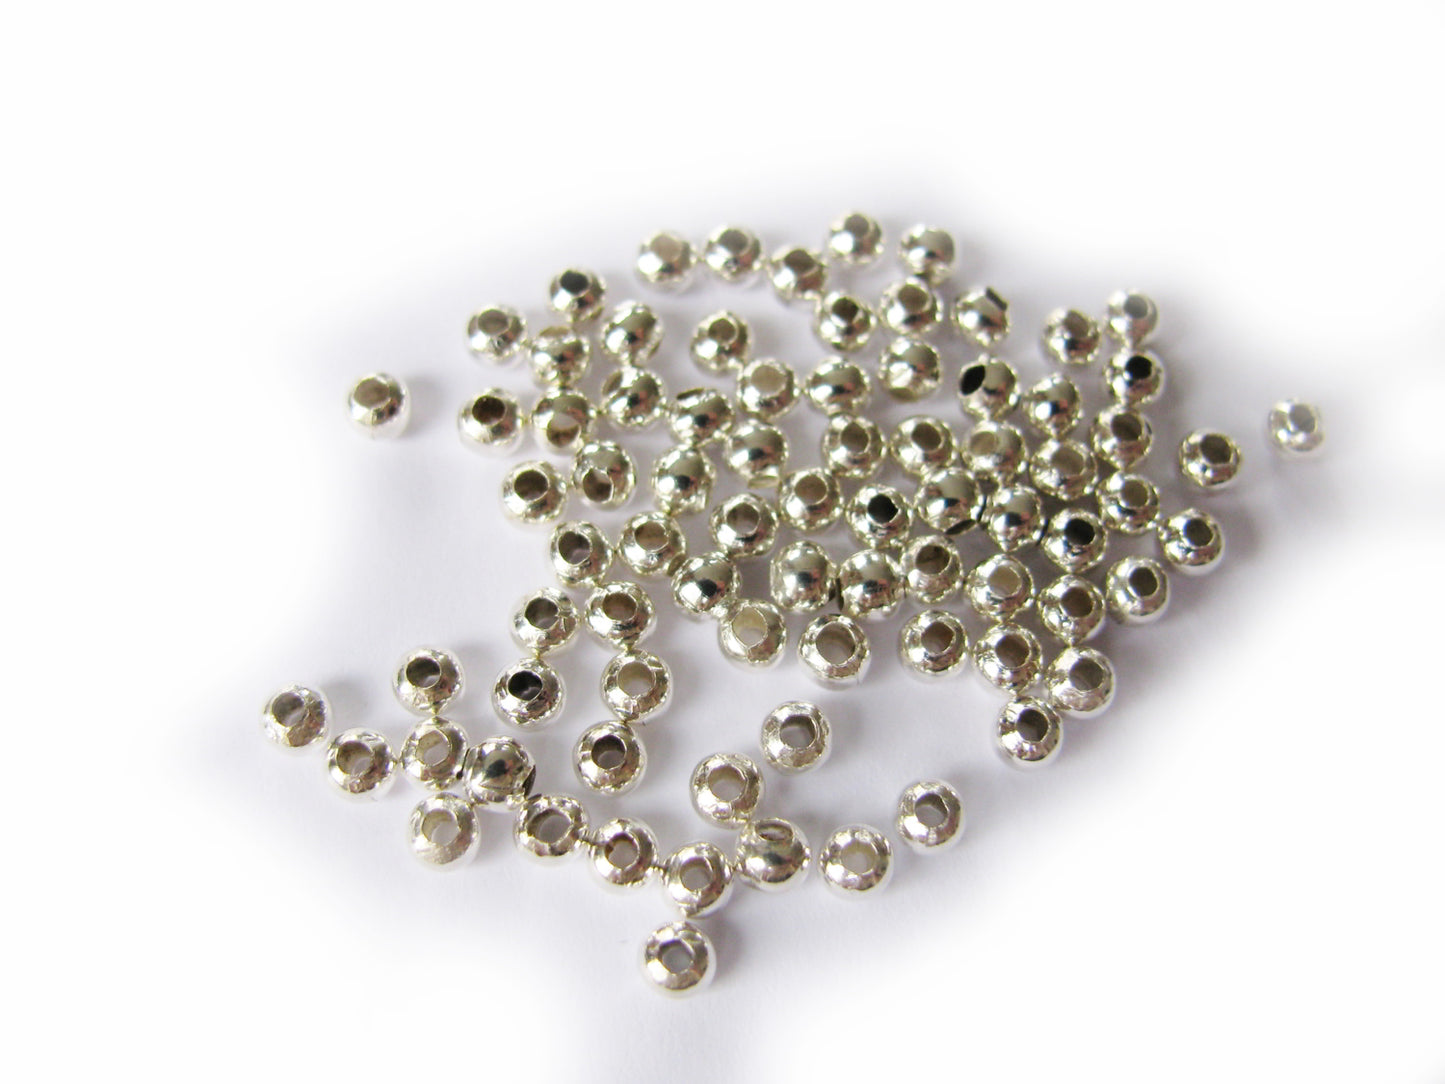 80 Metallperlen 3 mm glatt, Farbe silber hell, Perlen basteln, Zwischenperlen